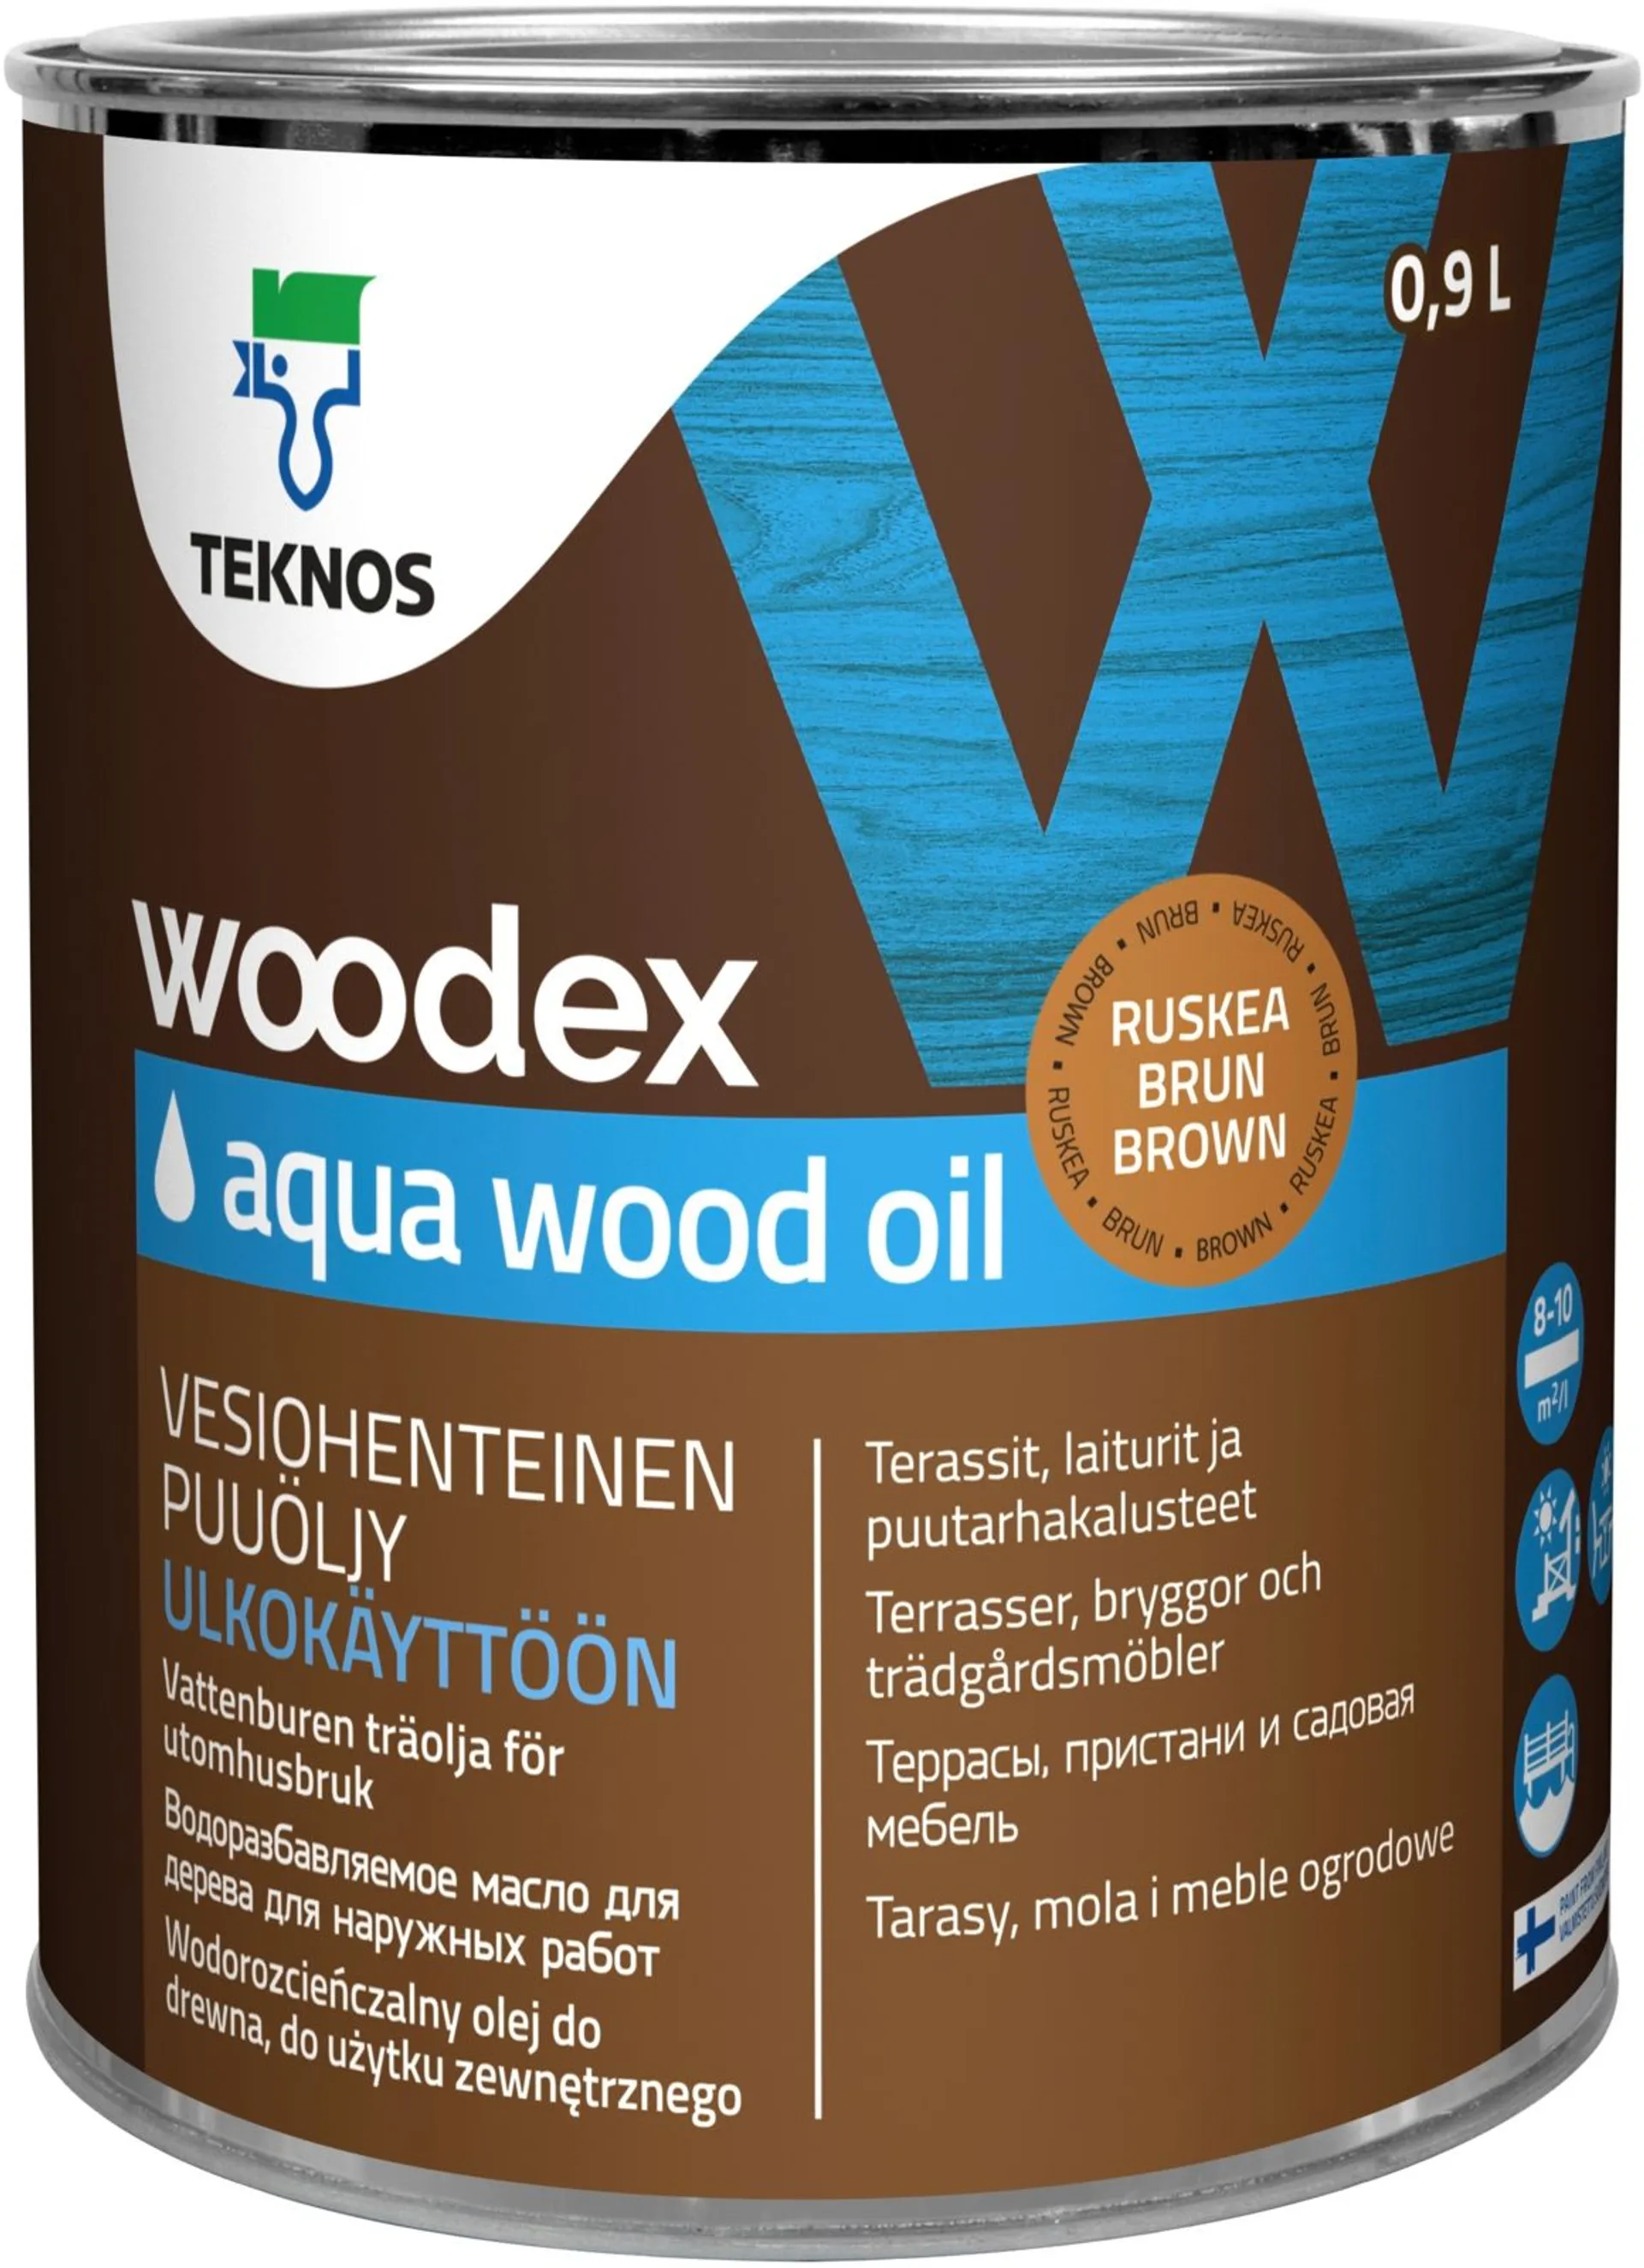 Teknos puuöljy Woodex Aqua Wood Oil 0,9 l ruskea